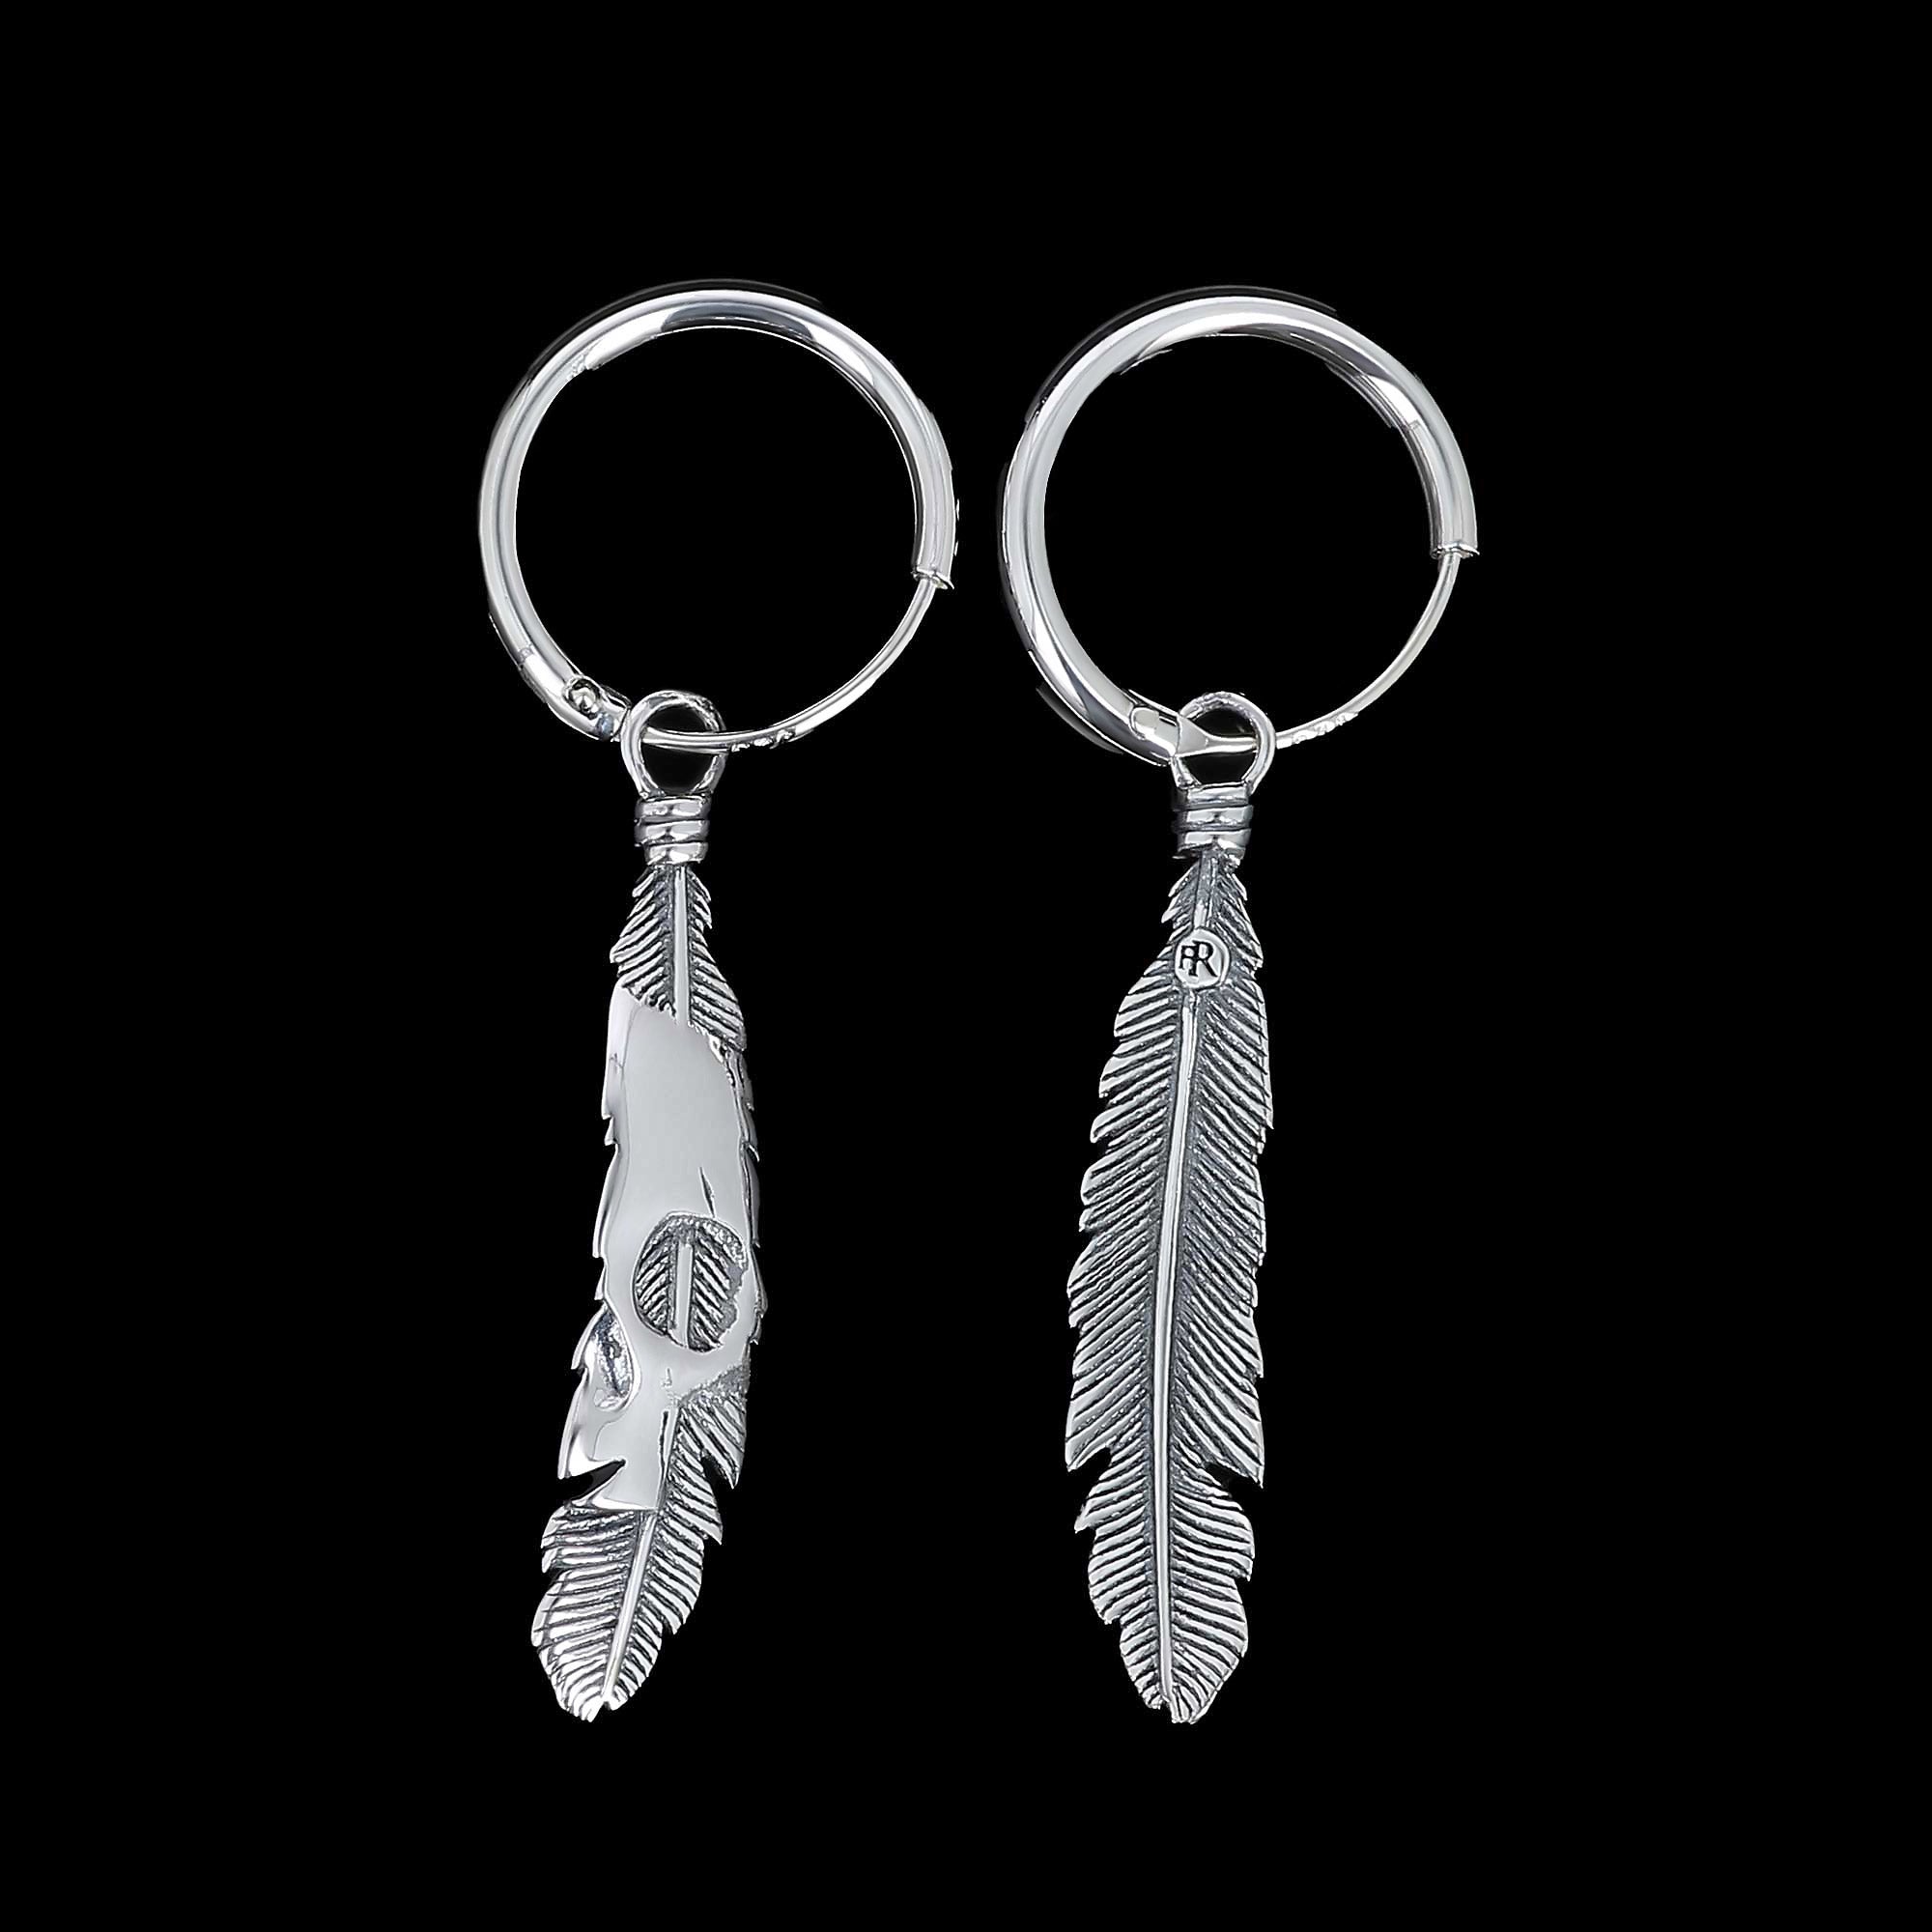 Pair of Maat feathers earrings in Sterling Sililver